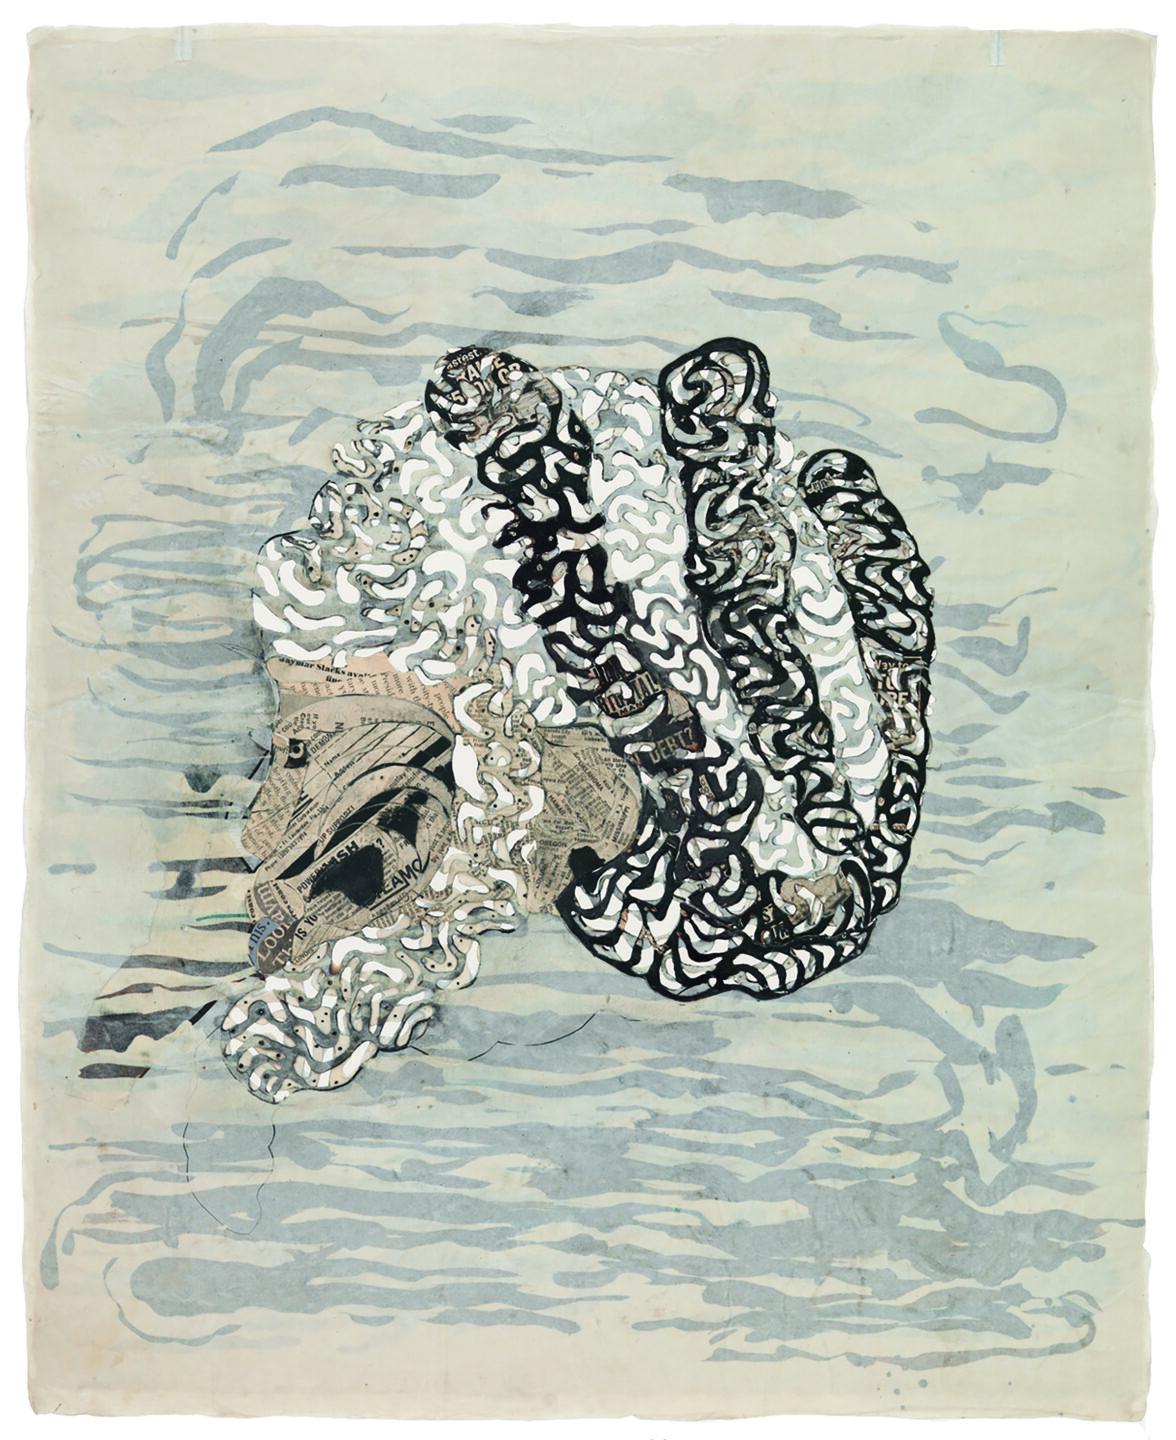 Desenho vertical de Ellen Gallagher em tinta que lembra forma aquática com tinta e recortes de revistas em marrom claro, cinza, preto e branco.